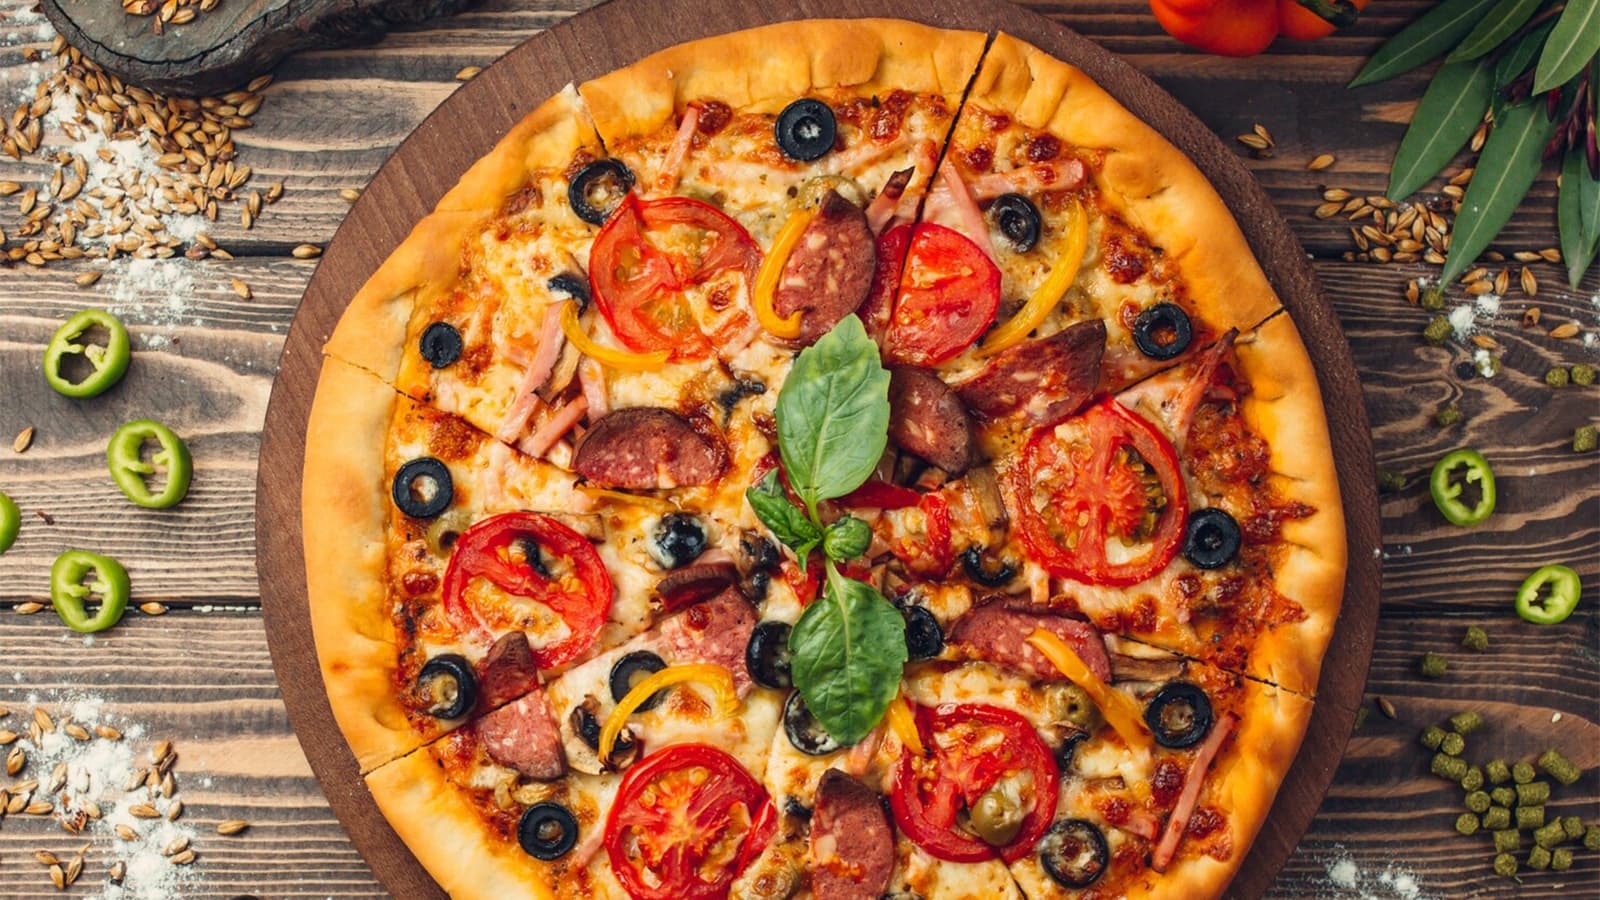 Wie viele Kalorien hat eine Pizza? Bild von einer Pizza auf einem Holzbrett mit ein paar anderen Zutaten.